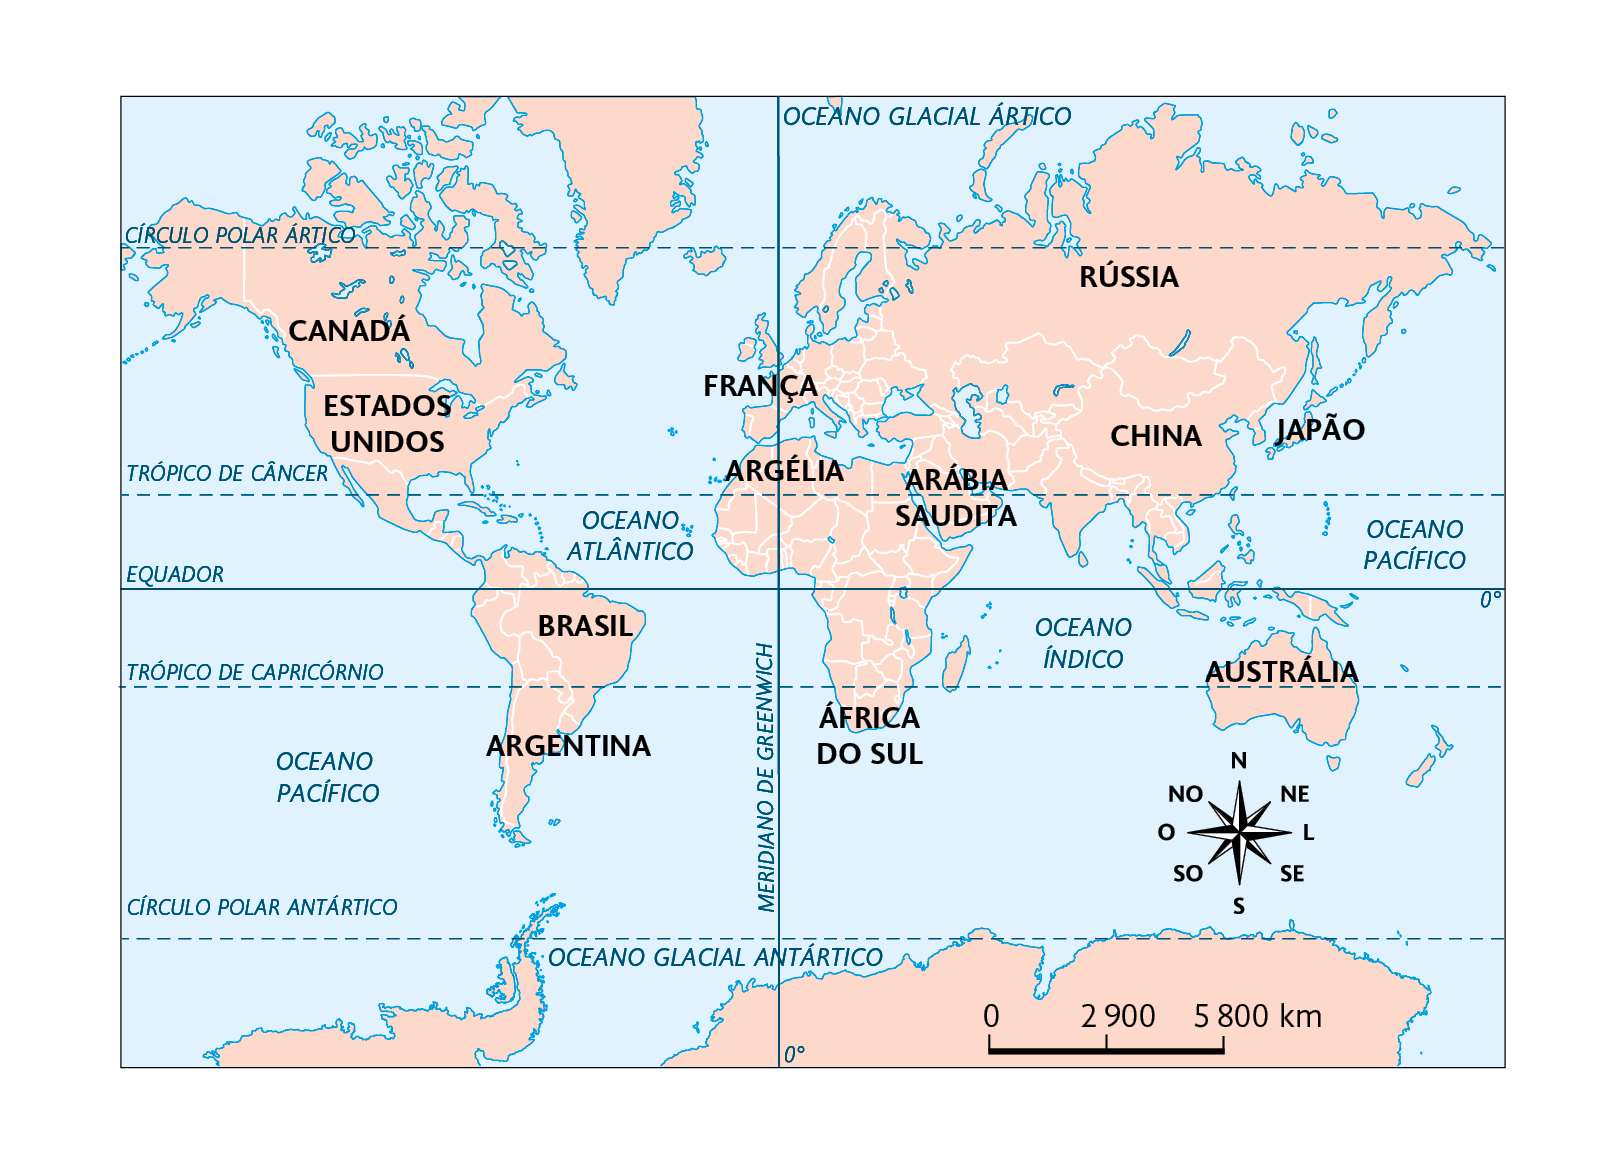 Mapa. Projeção de Mercator. 
Planisfério com os seguintes países demarcados: Canadá, Estados Unidos, Brasil, Argentina, França, Argélia, África do Sul, Arábia Saudita, Rússia, China, Japão e Austrália. No canto inferior direito, a rosa dos ventos e a escala: 2900 quilômetros por centímetro.